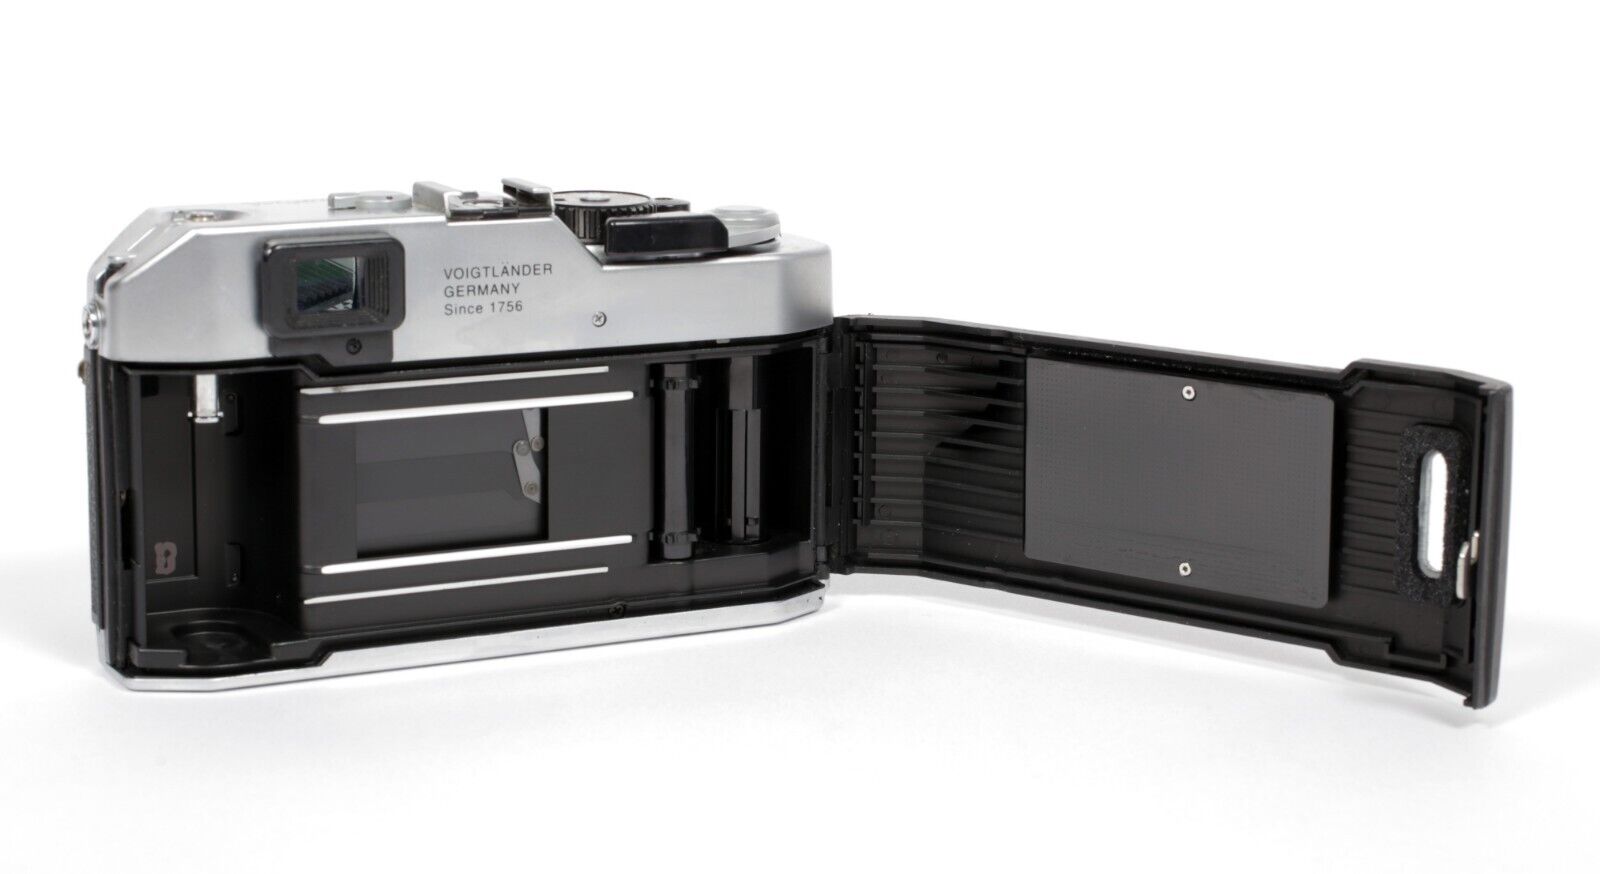 Voigtlander Bessa R 35mm Rangefinder camera with Canon 50mm 